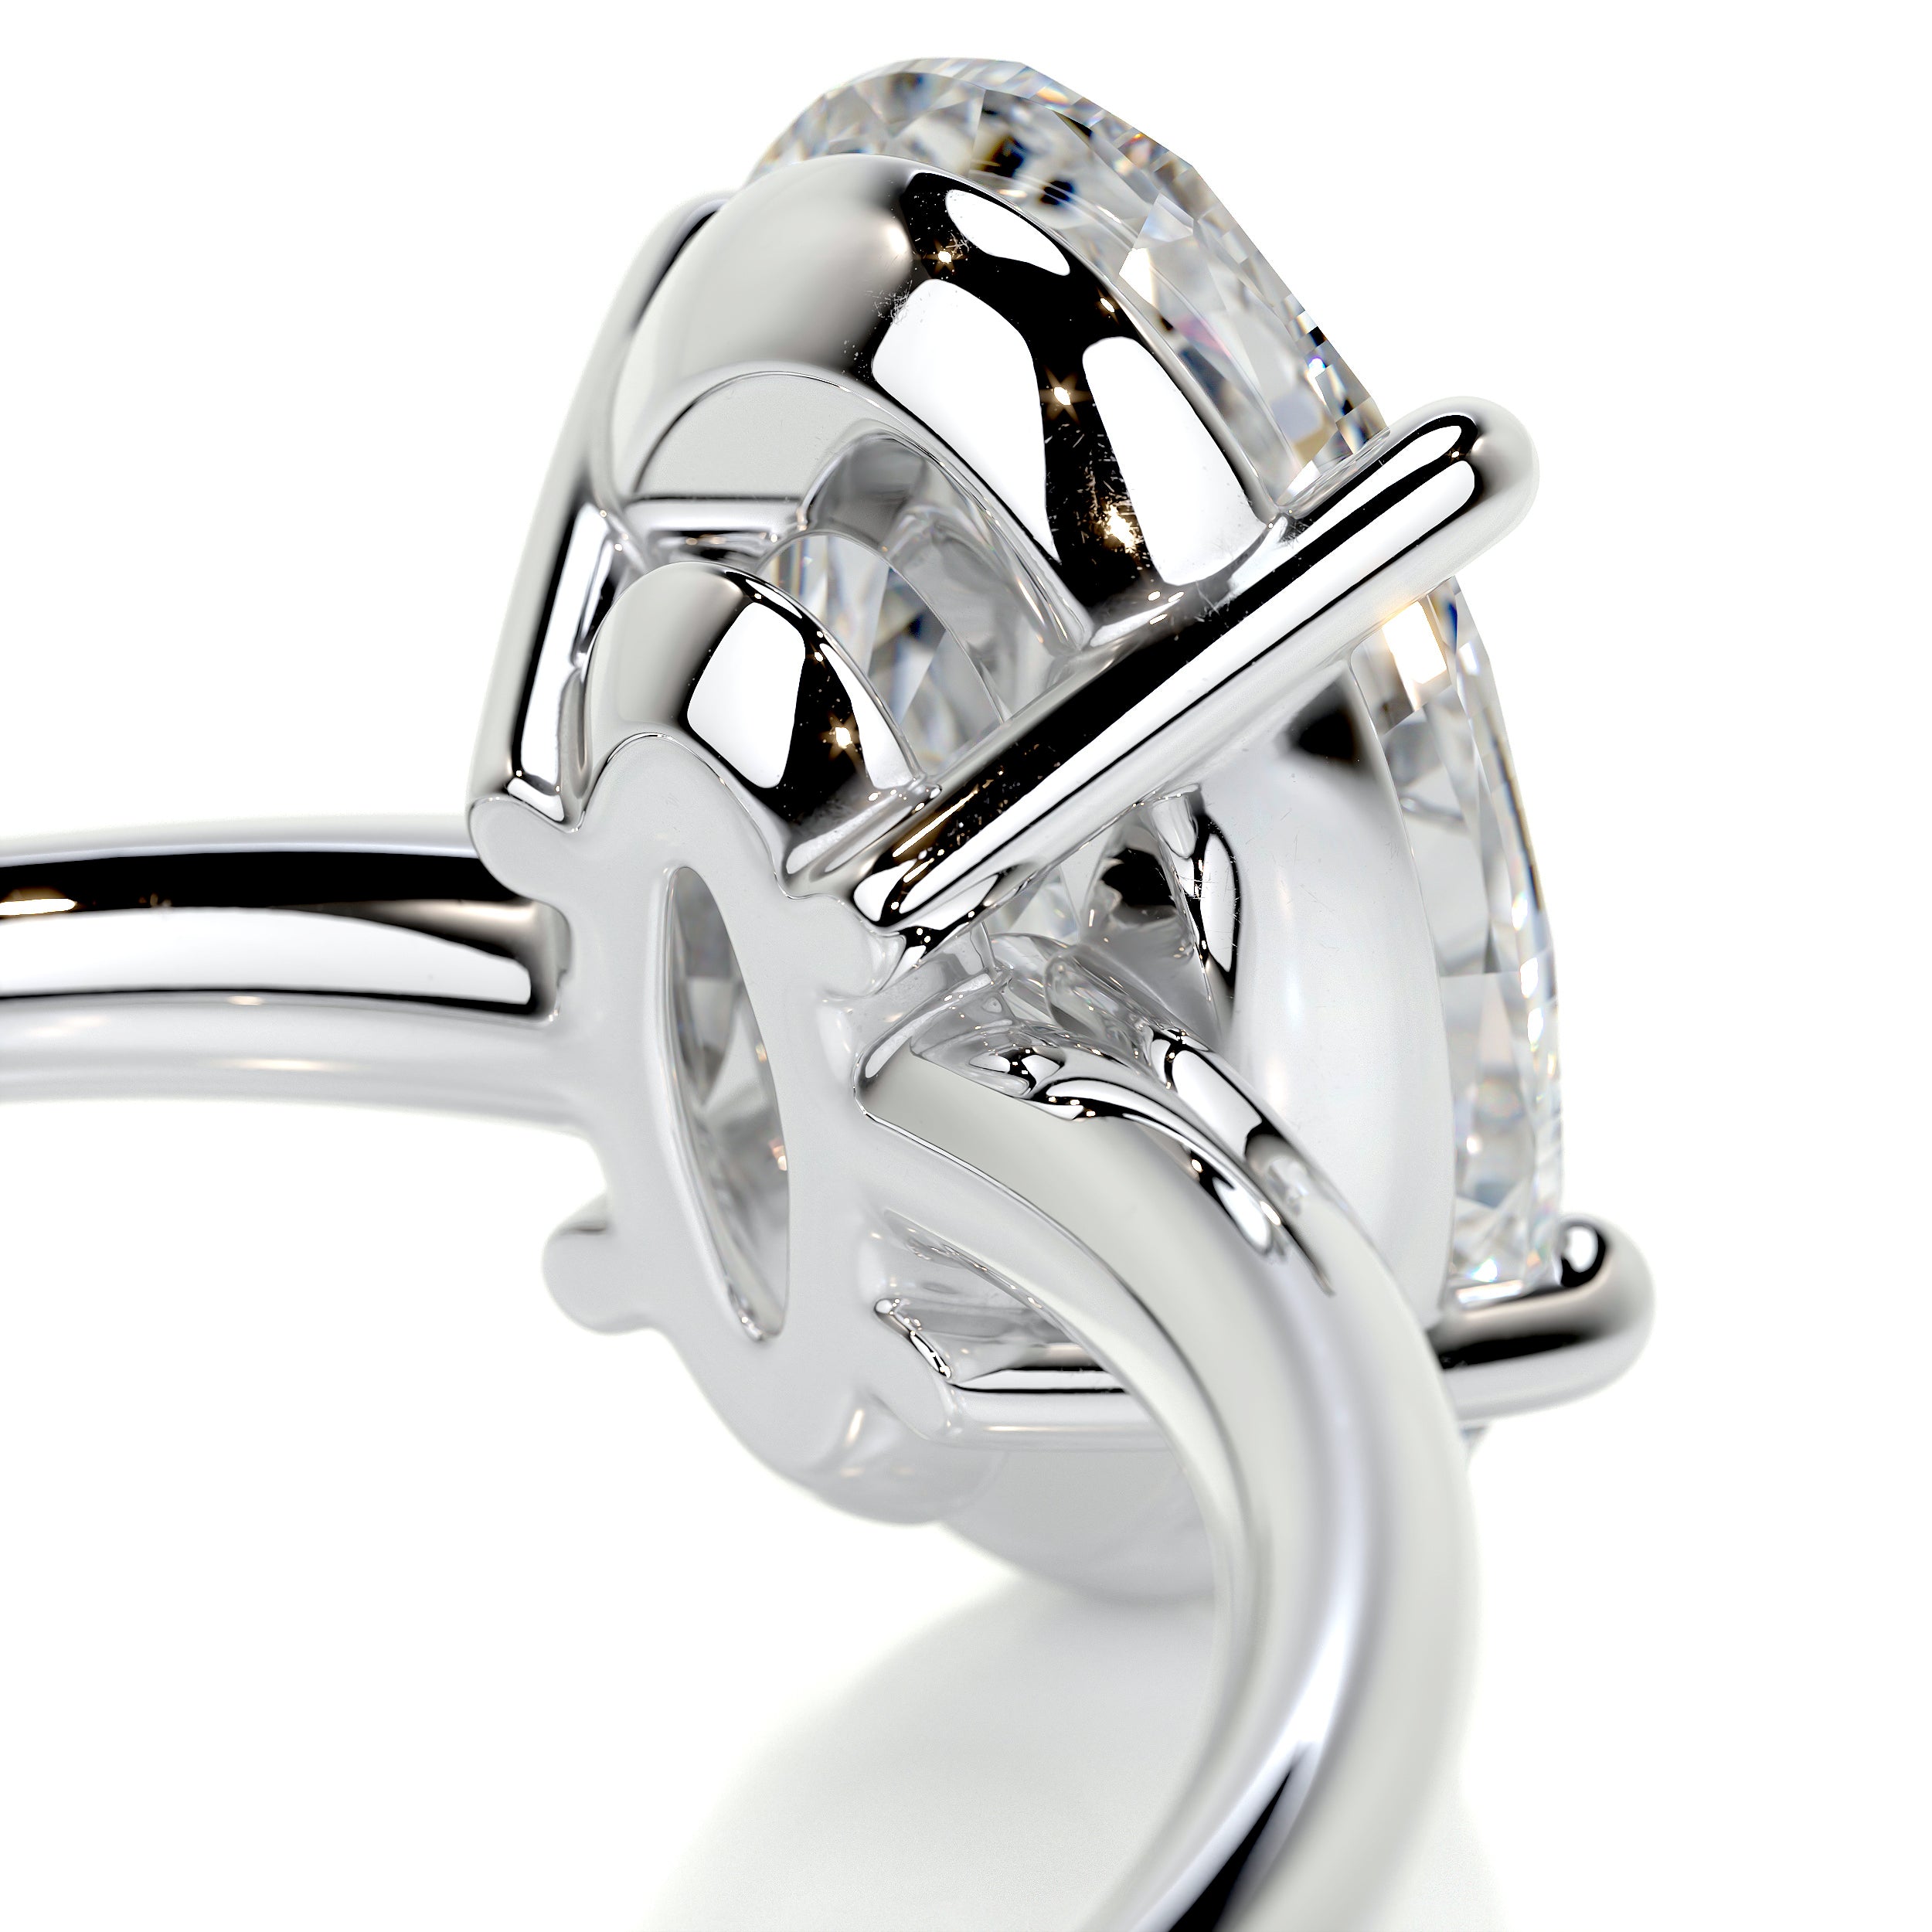 Adaline Diamond Engagement Ring -Platinum